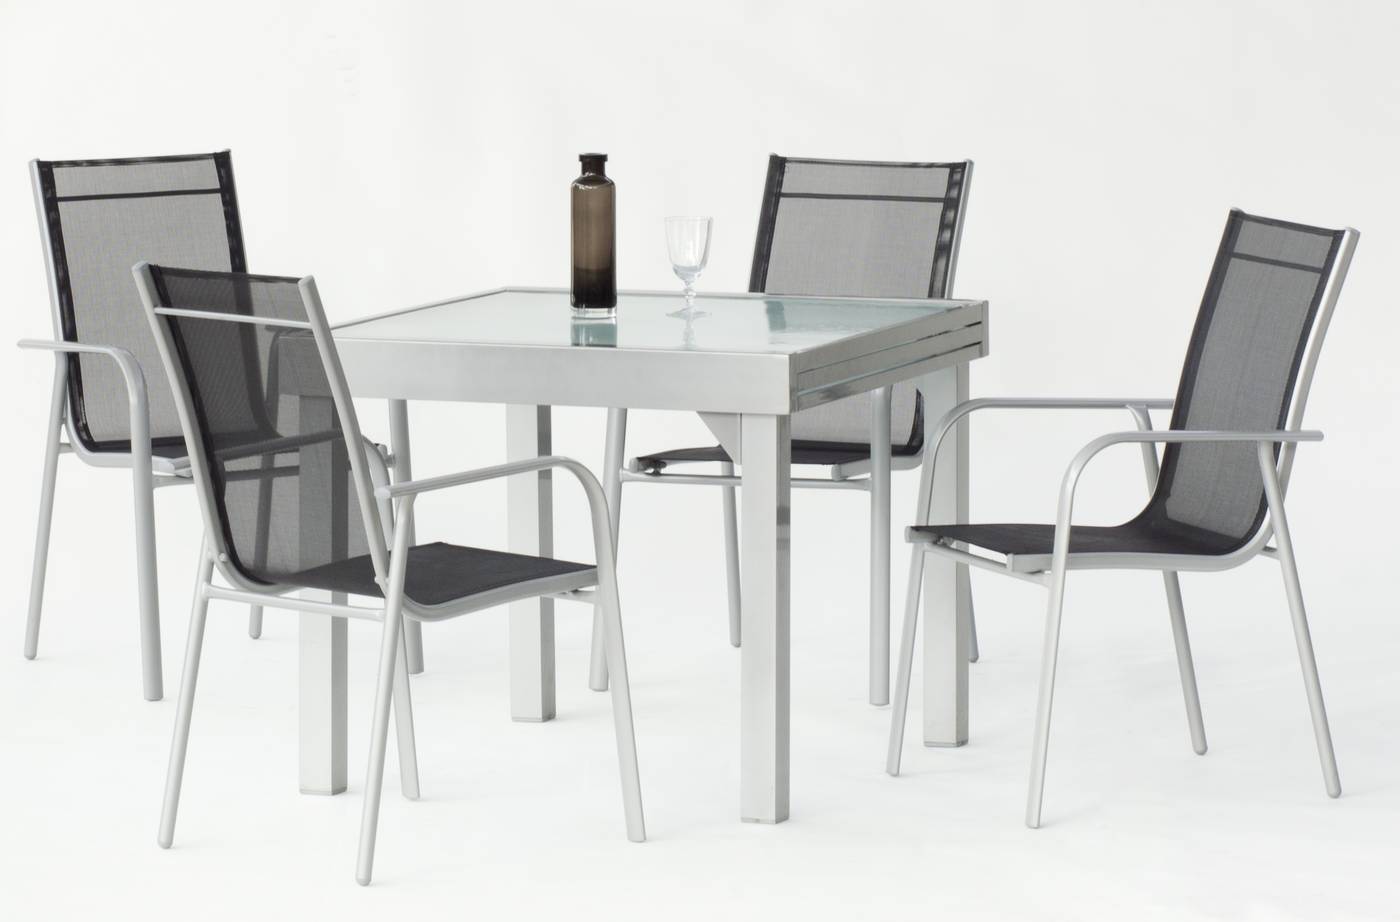 Mesa Ext. Aluminio Mantua - Mesa de aluminio extensible de 90 a 180 cm., con tablero de cristal templado